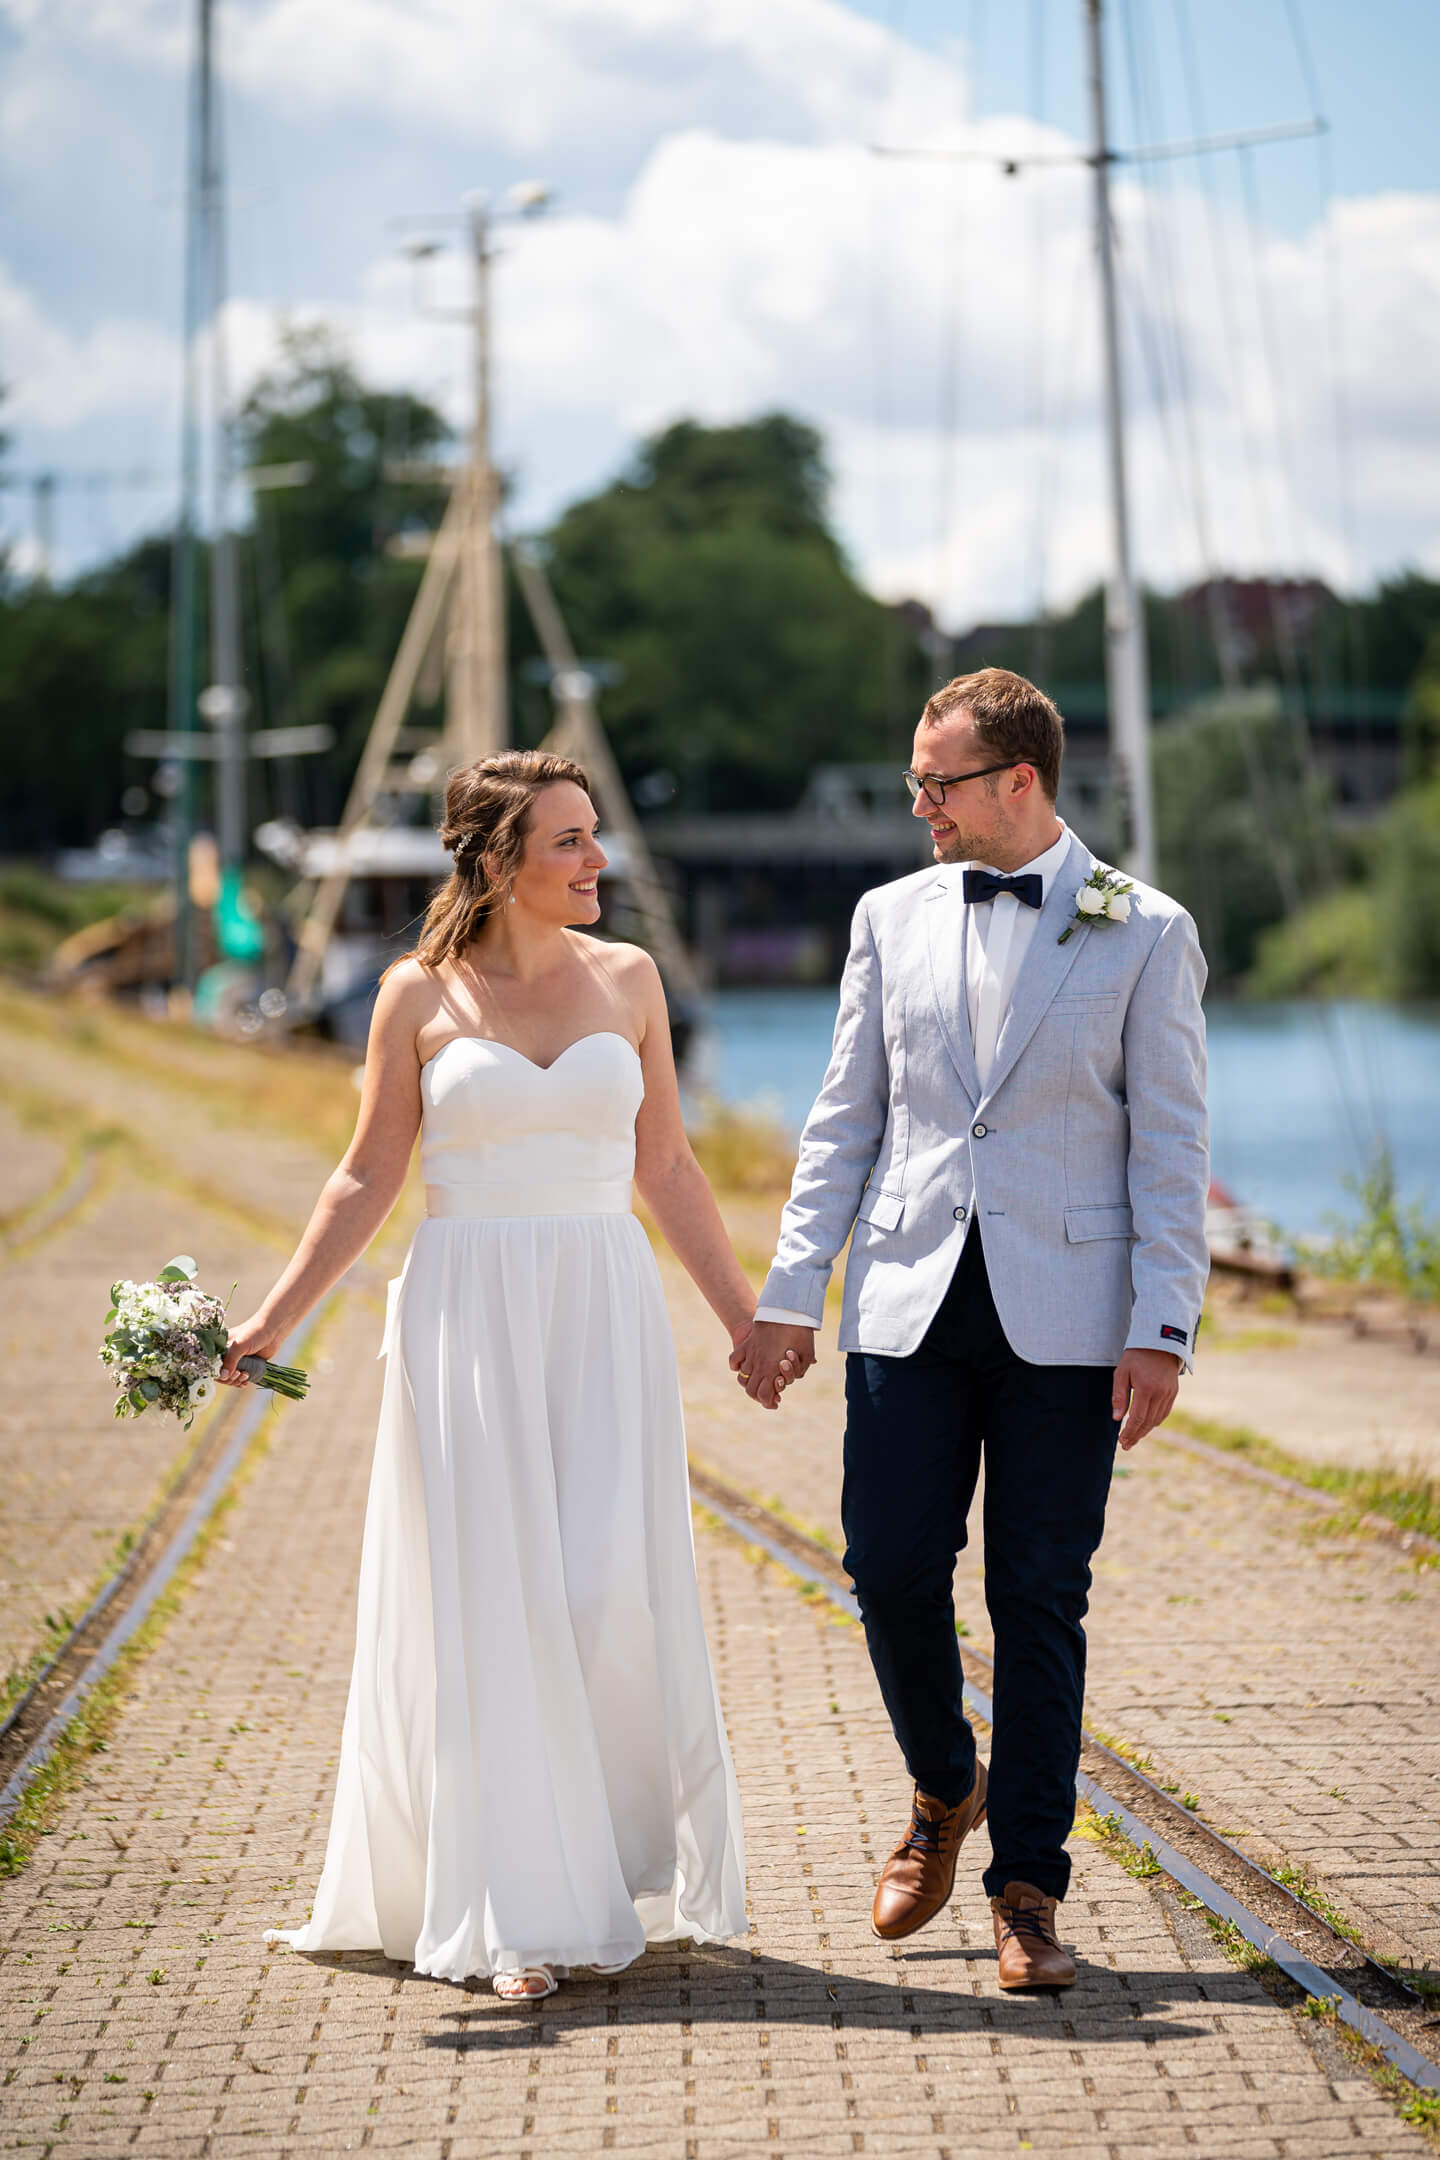 Professionelle Hochzeitsfotos in Lübeck mit der Trave im Hintergrund.